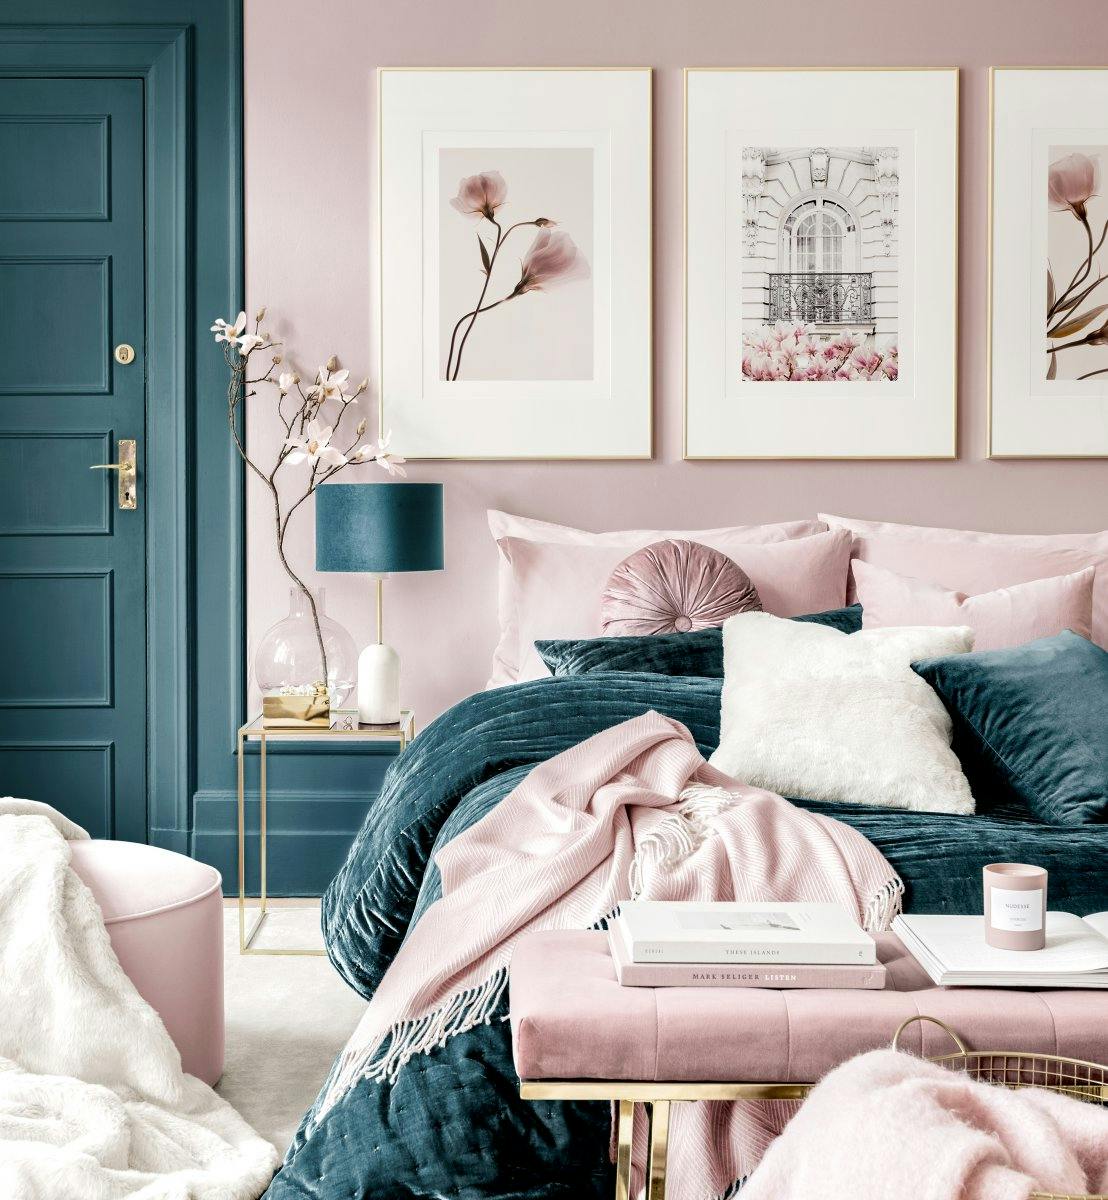 جدار لوحات الأزهار الوردية لغرفة النوم وجدار الفن مع إطارات ذهبية اللون